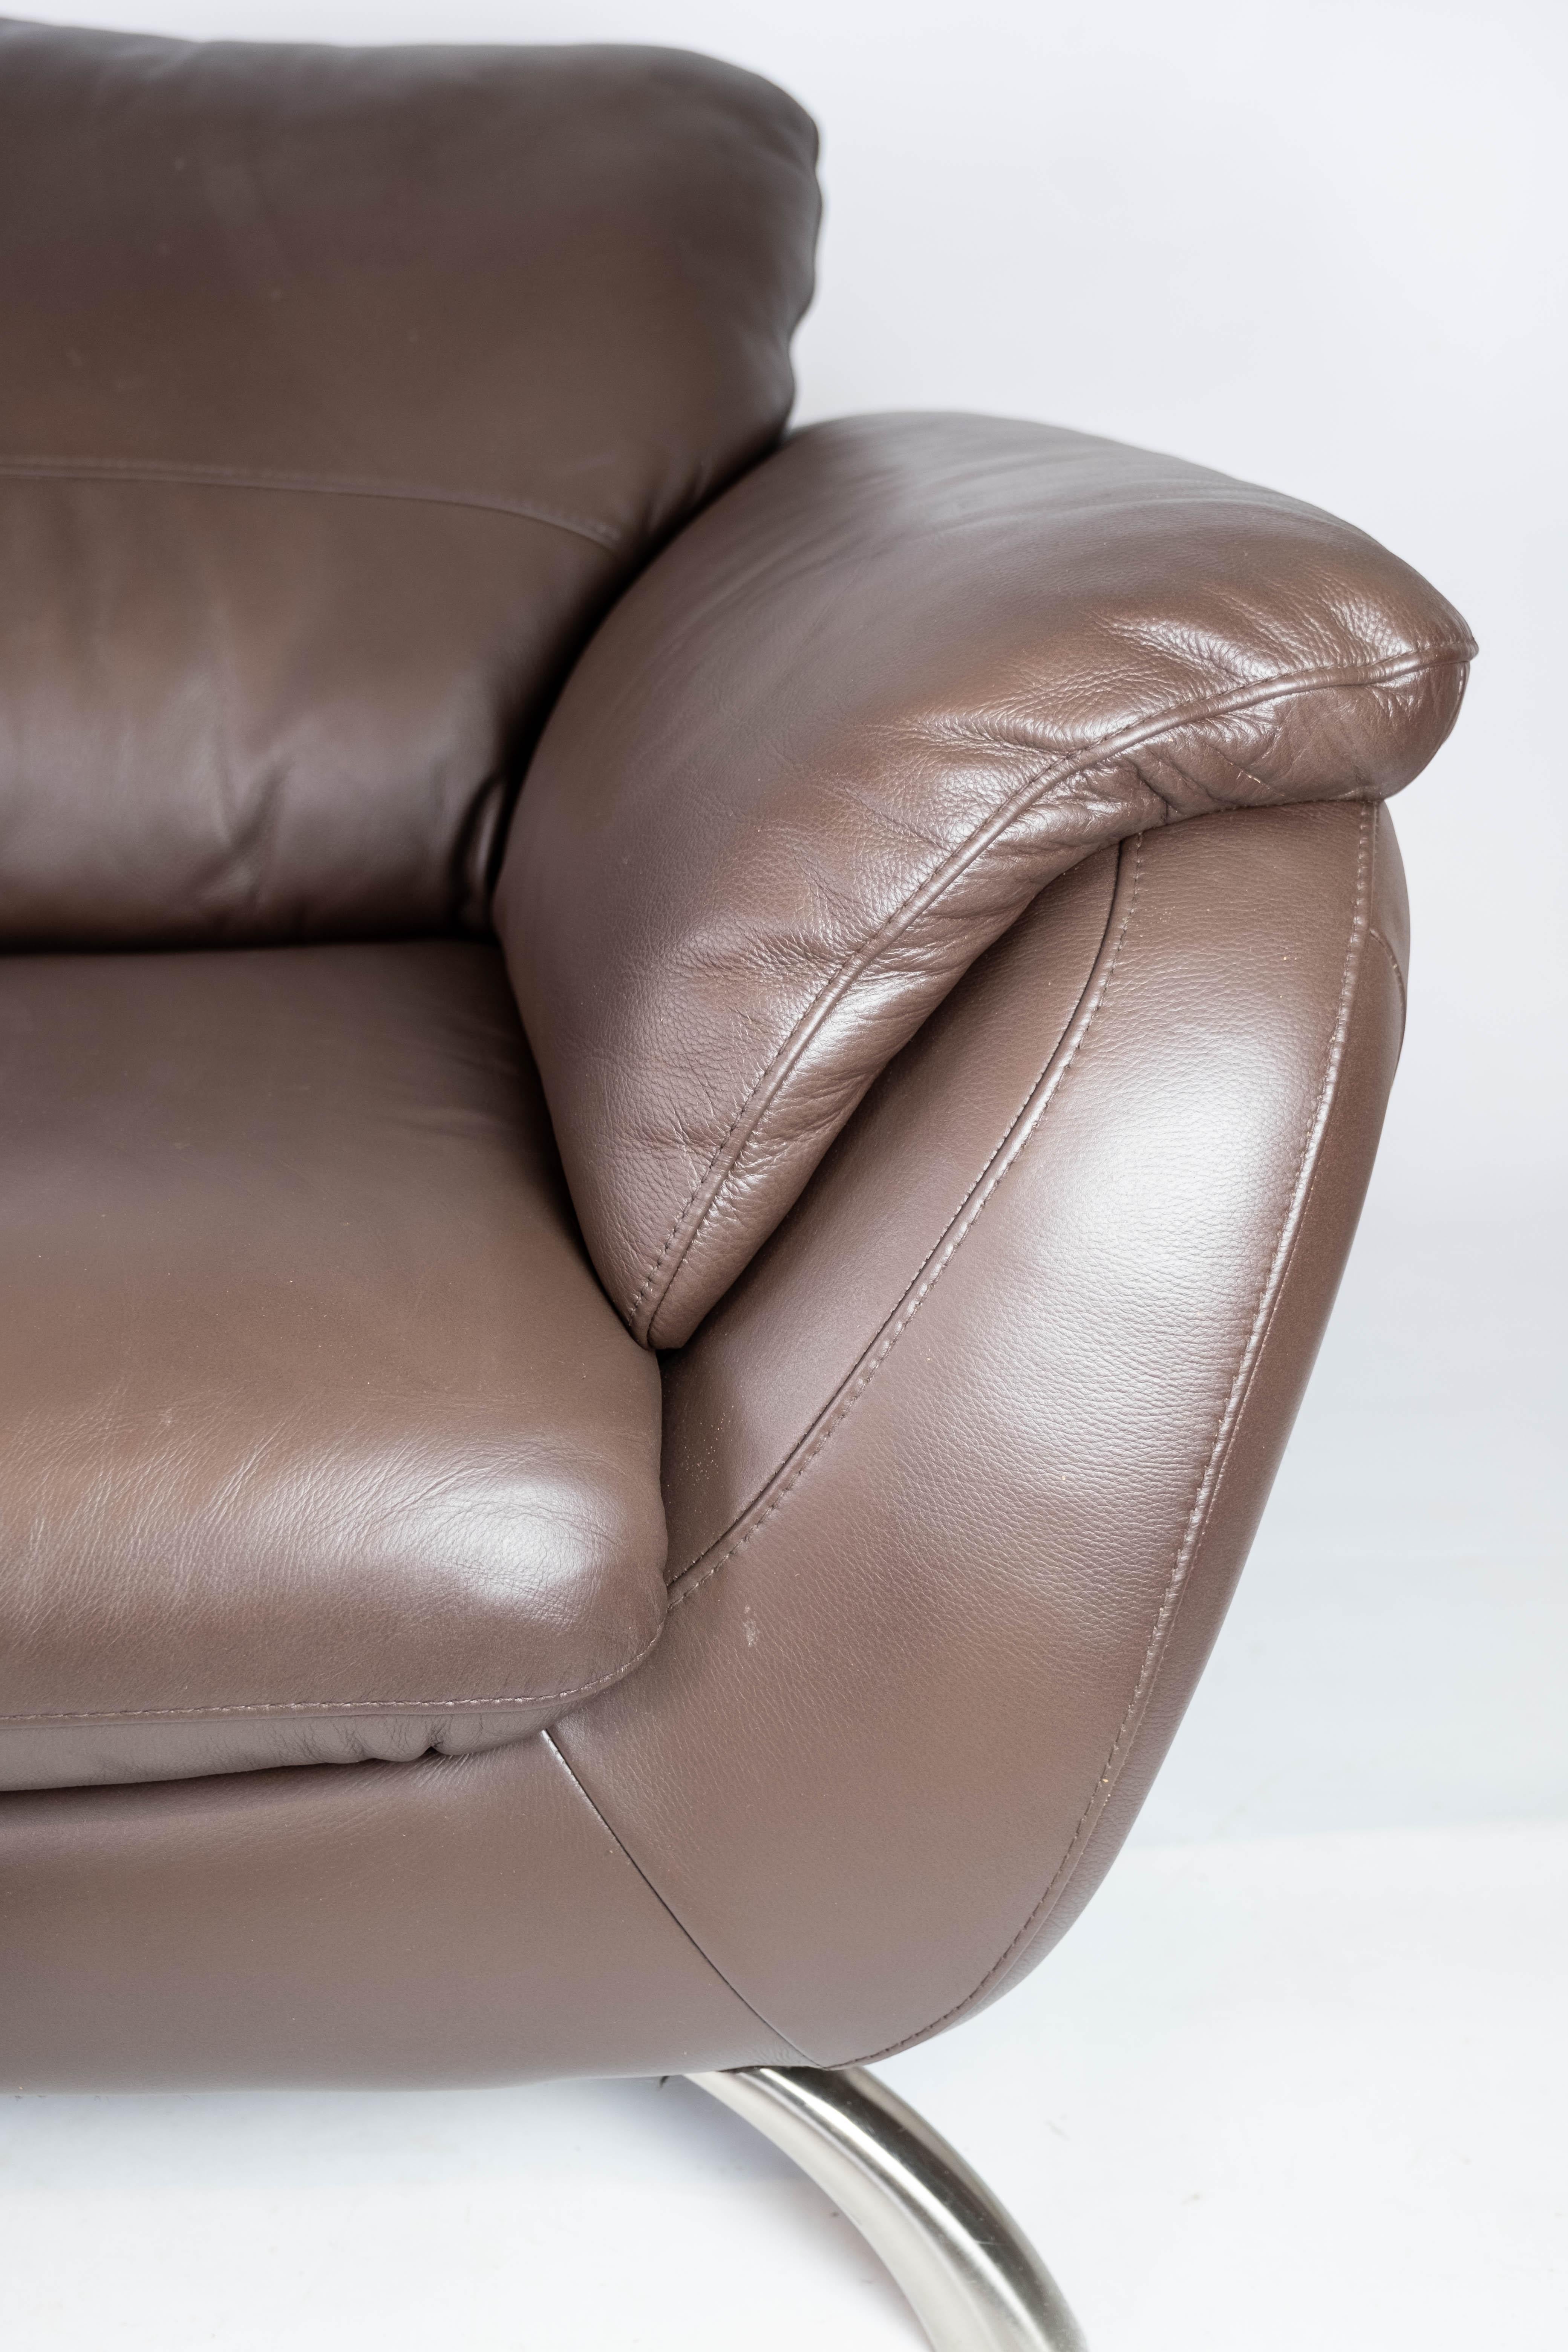 italsofa leather sofa